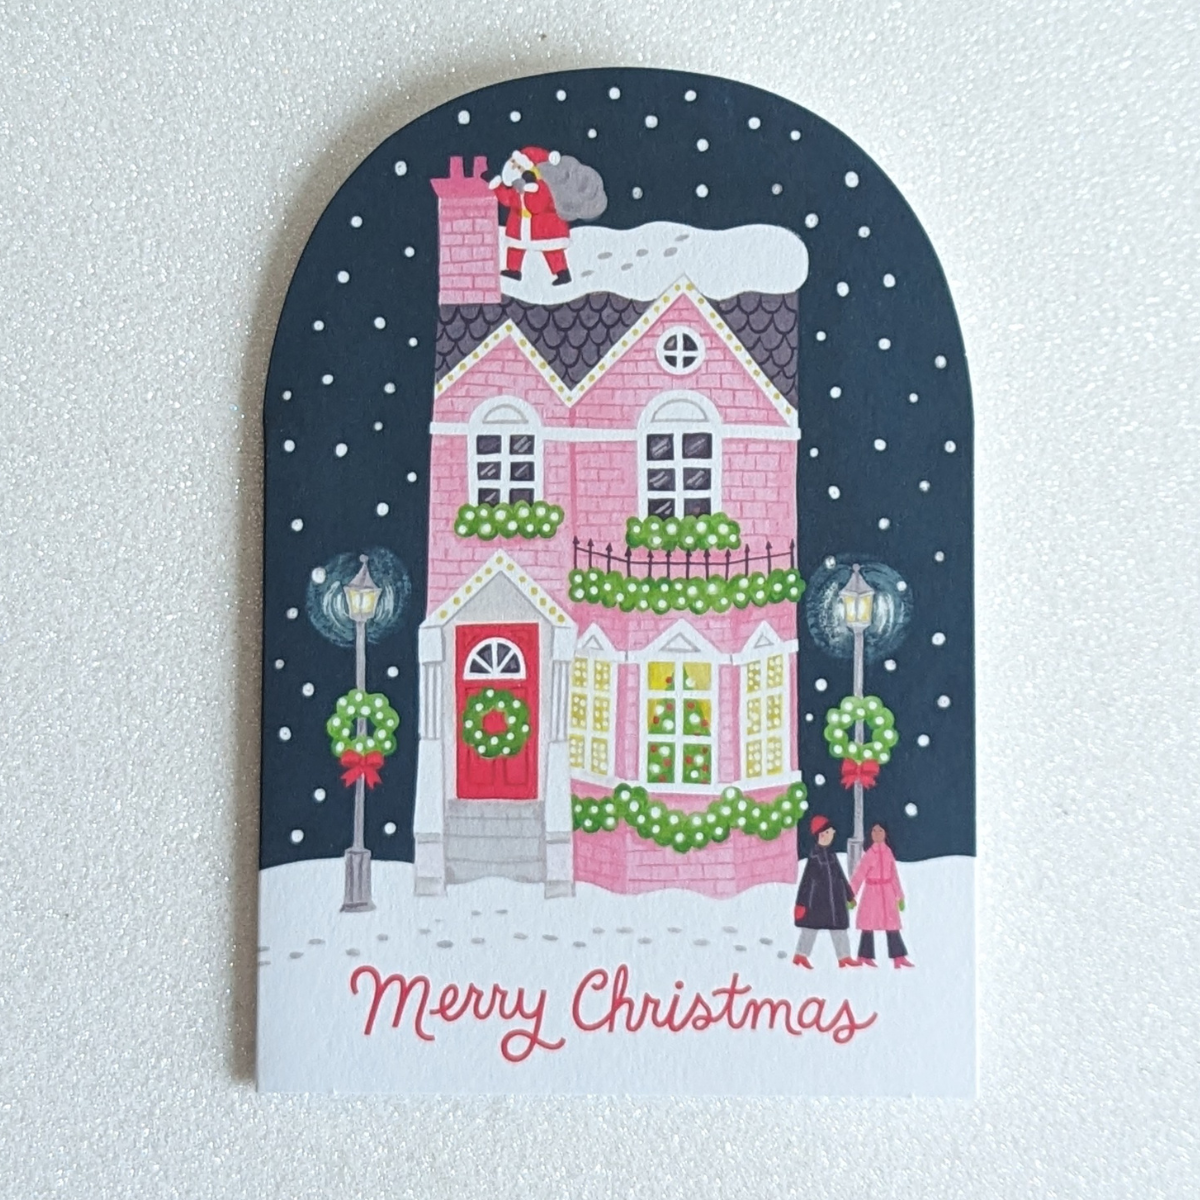 La maison rose joliment décorée et le Père Noël près de la cheminée créent une image qui évoque instantanément la féerie des fêtes.